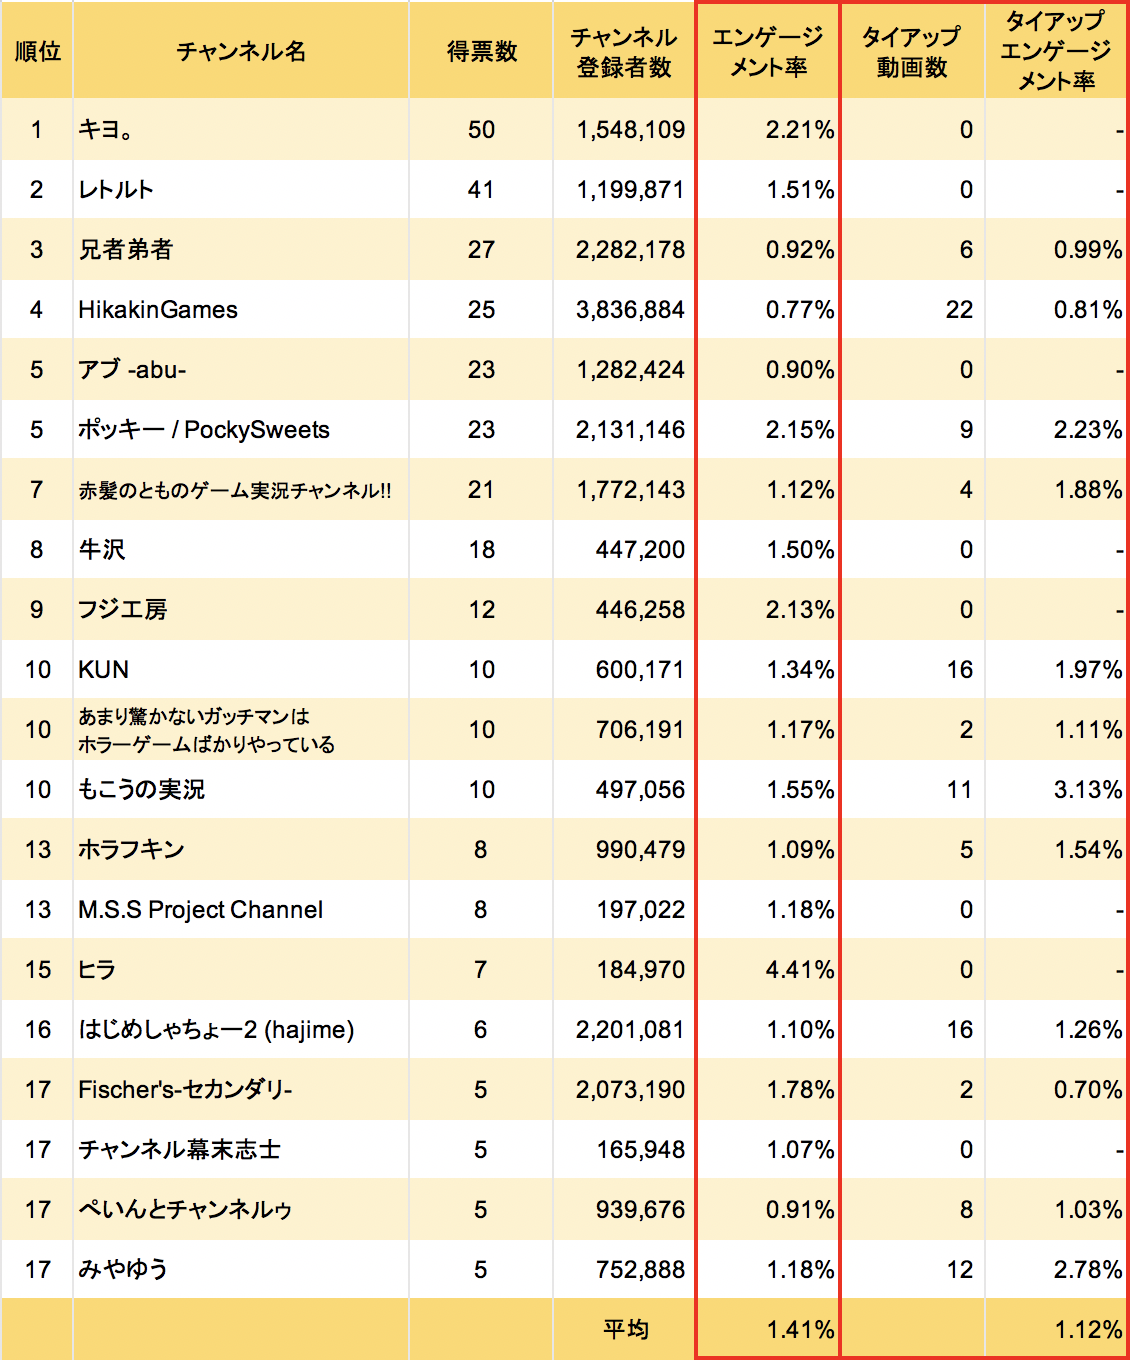 人気ゲーム実況者は エンゲージメント率が高くタイアップ動画は少ない傾向 Kamui Tracker調査 株式会社エビリーのプレスリリース